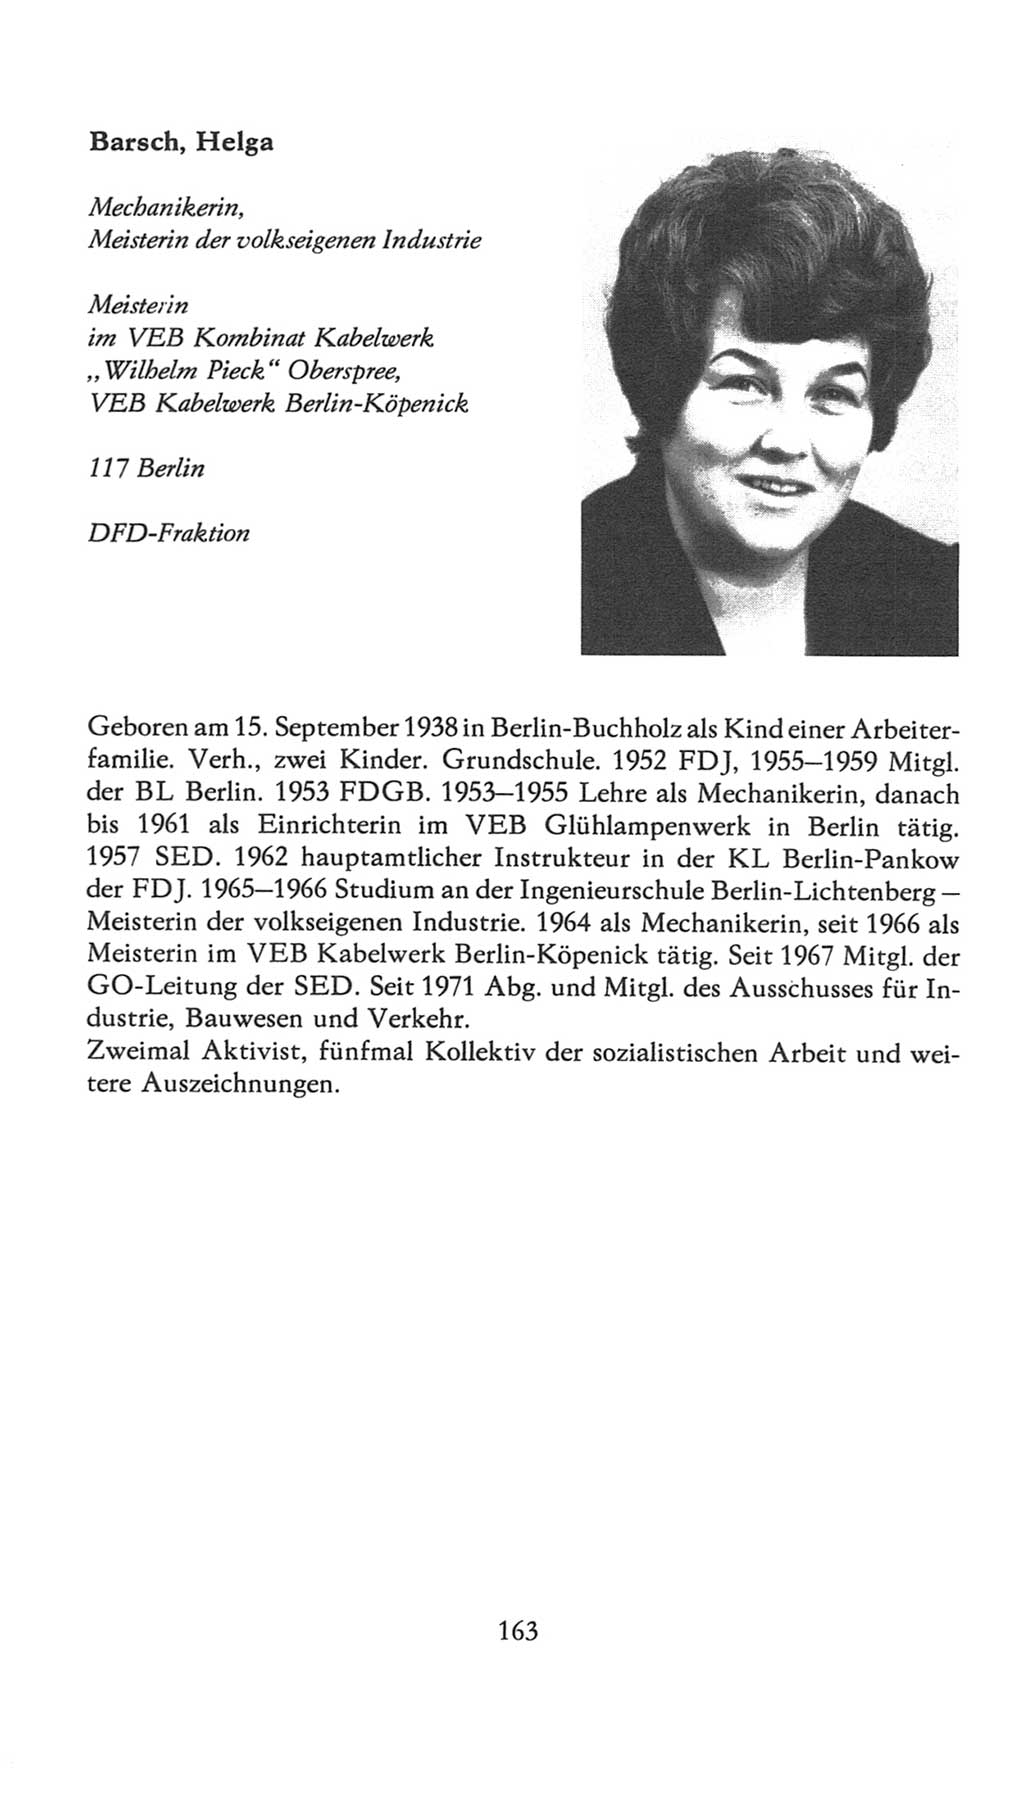 Volkskammer (VK) der Deutschen Demokratischen Republik (DDR), 7. Wahlperiode 1976-1981, Seite 163 (VK. DDR 7. WP. 1976-1981, S. 163)